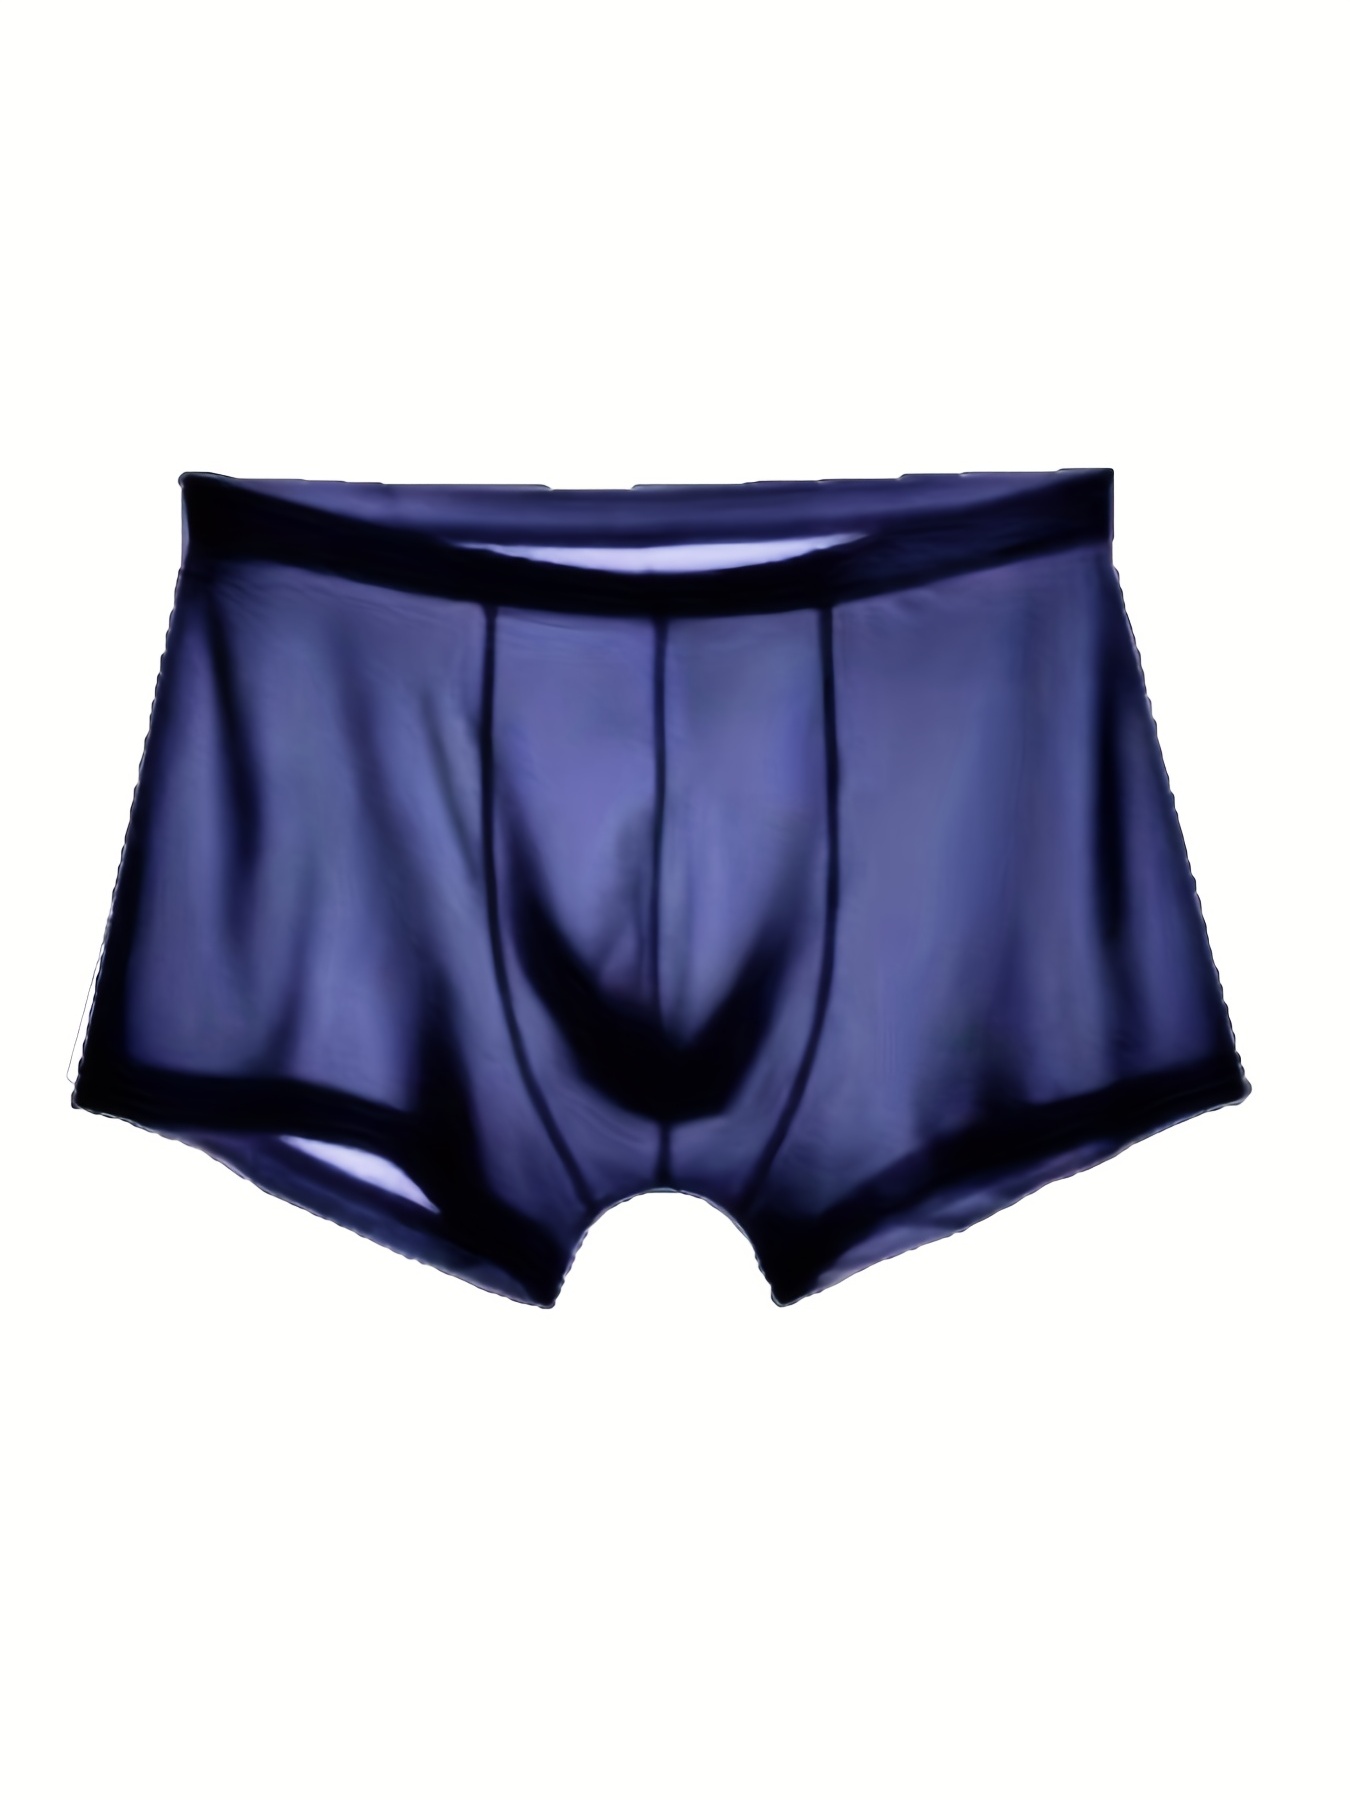 Men's Transparent Ice Silk Underwear Boxer Briefs 85% Nylon 15